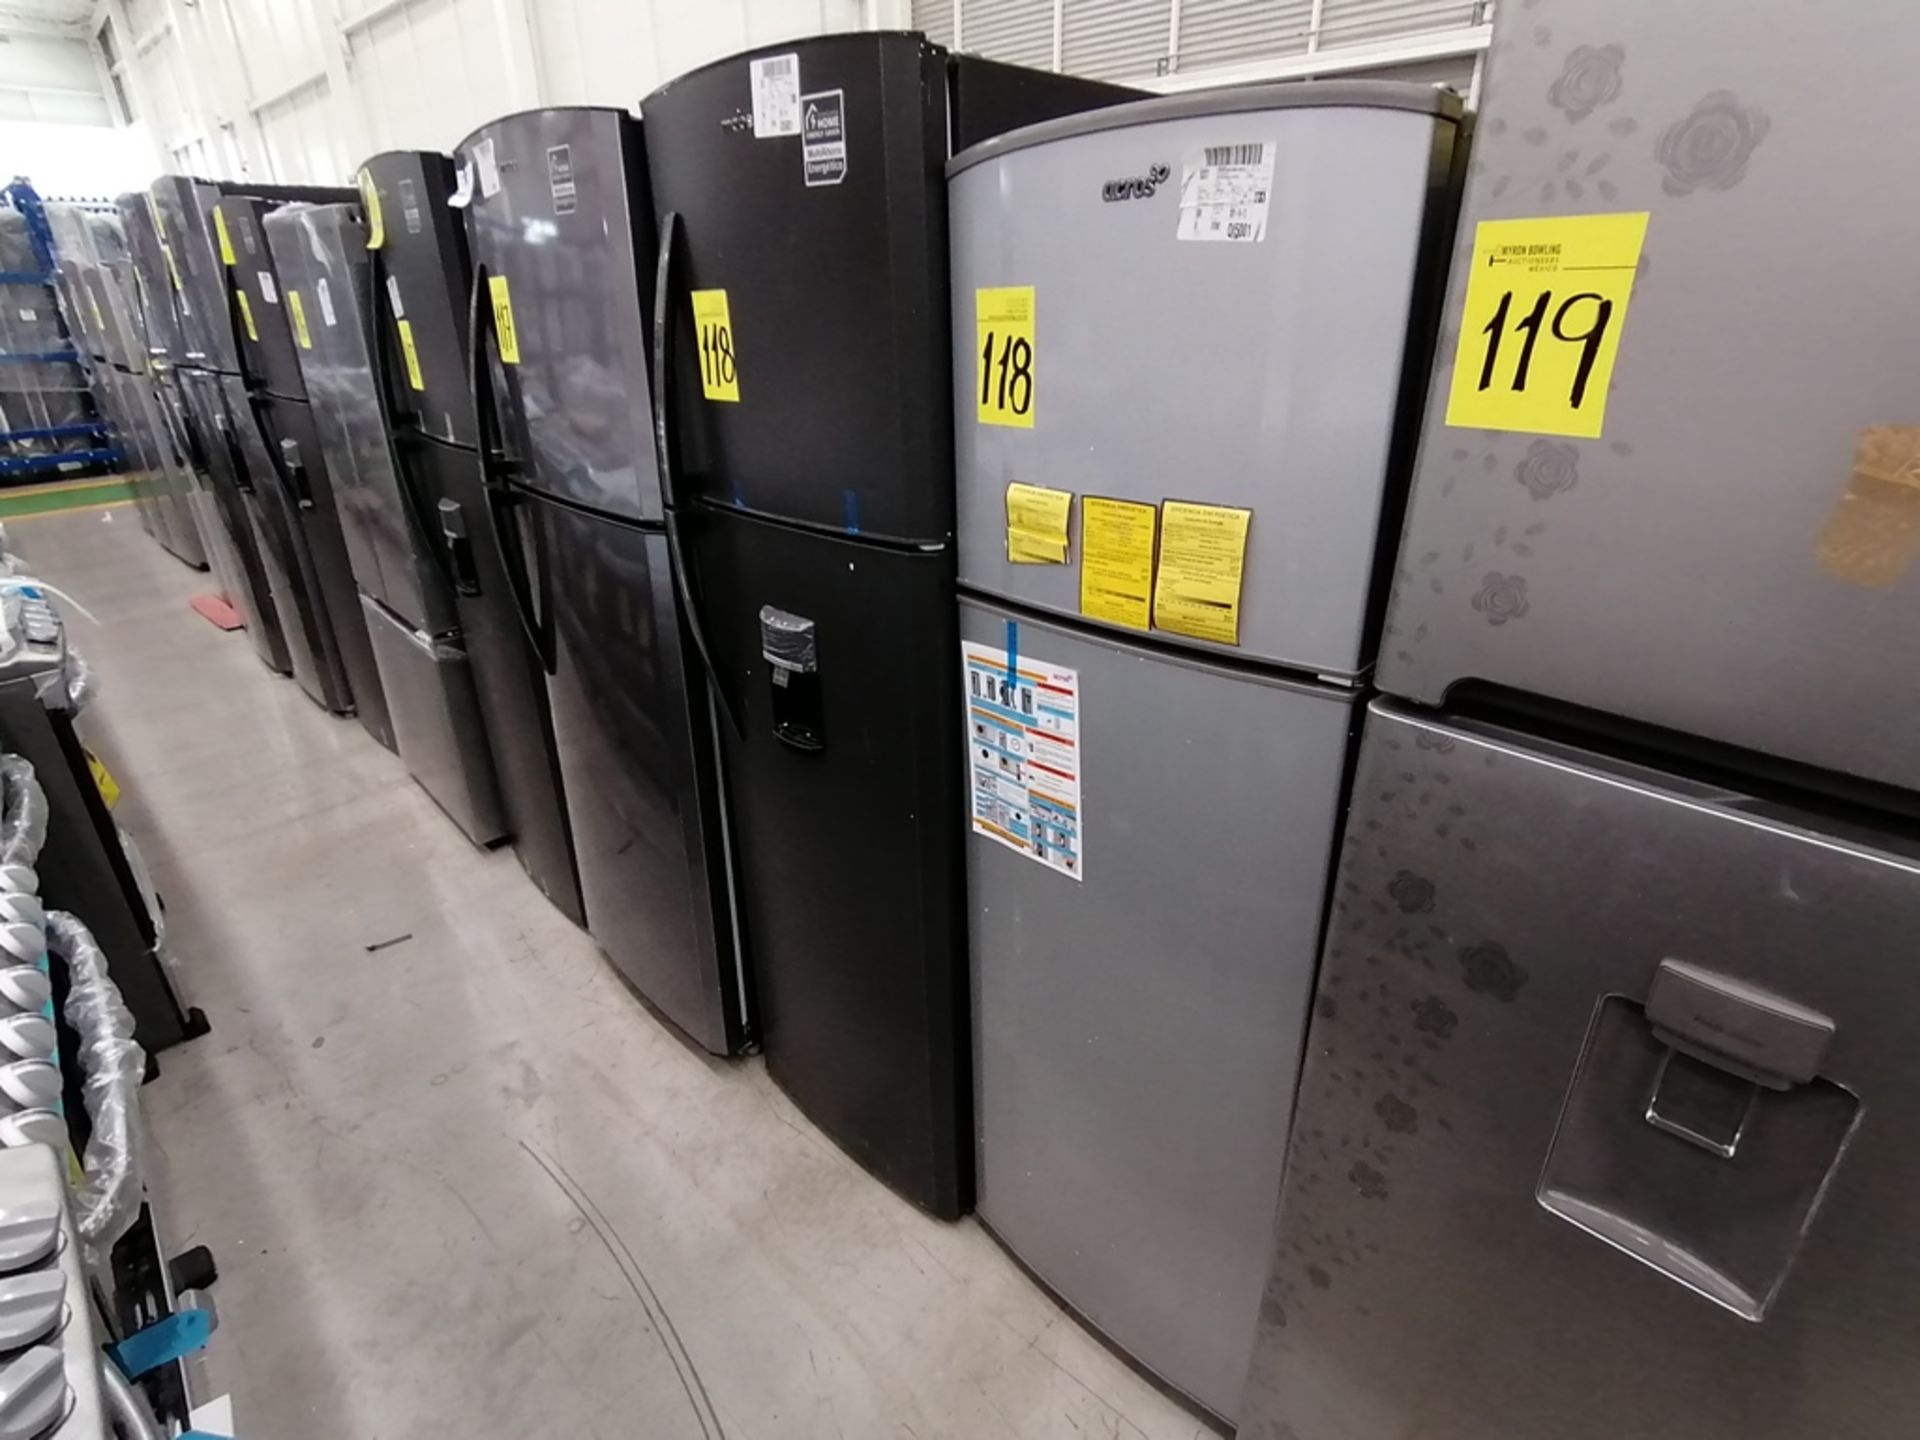 Lote de 2 refrigeradores incluye: 1 Refrigerador con dispensador de agua, Marca Mabe, Modelo RMA300 - Image 8 of 15